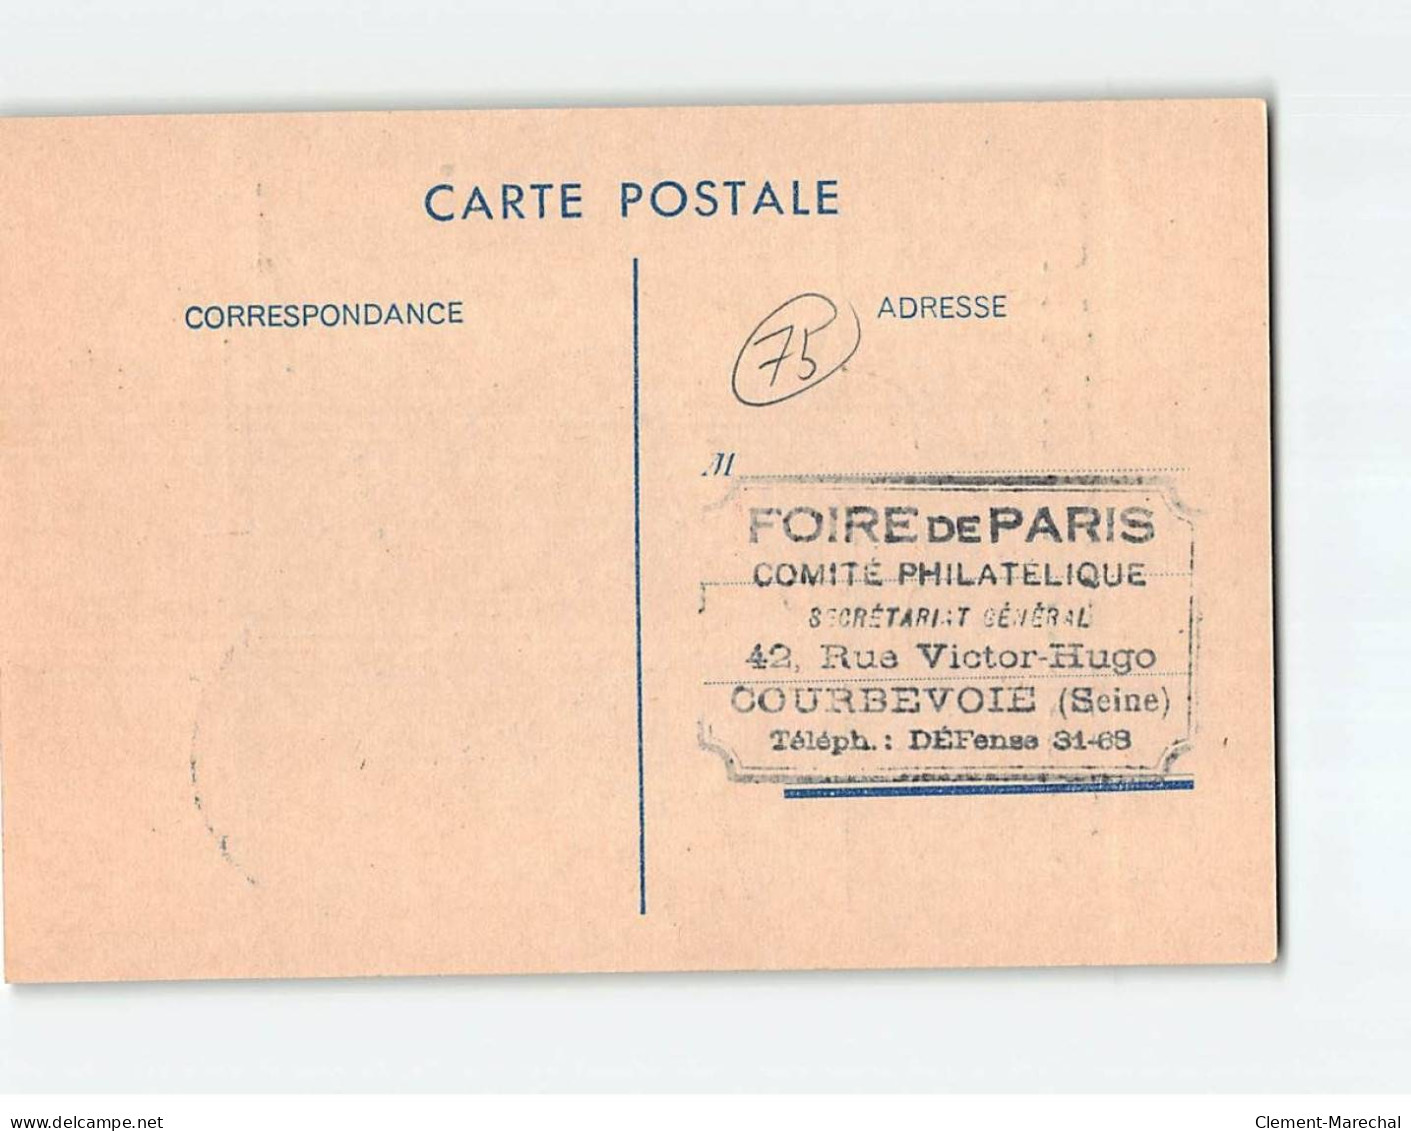 PARIS : Foire De Paris De Mai 1947, Salon Internationaux De La Philatélie - Très Bon état - Expositions